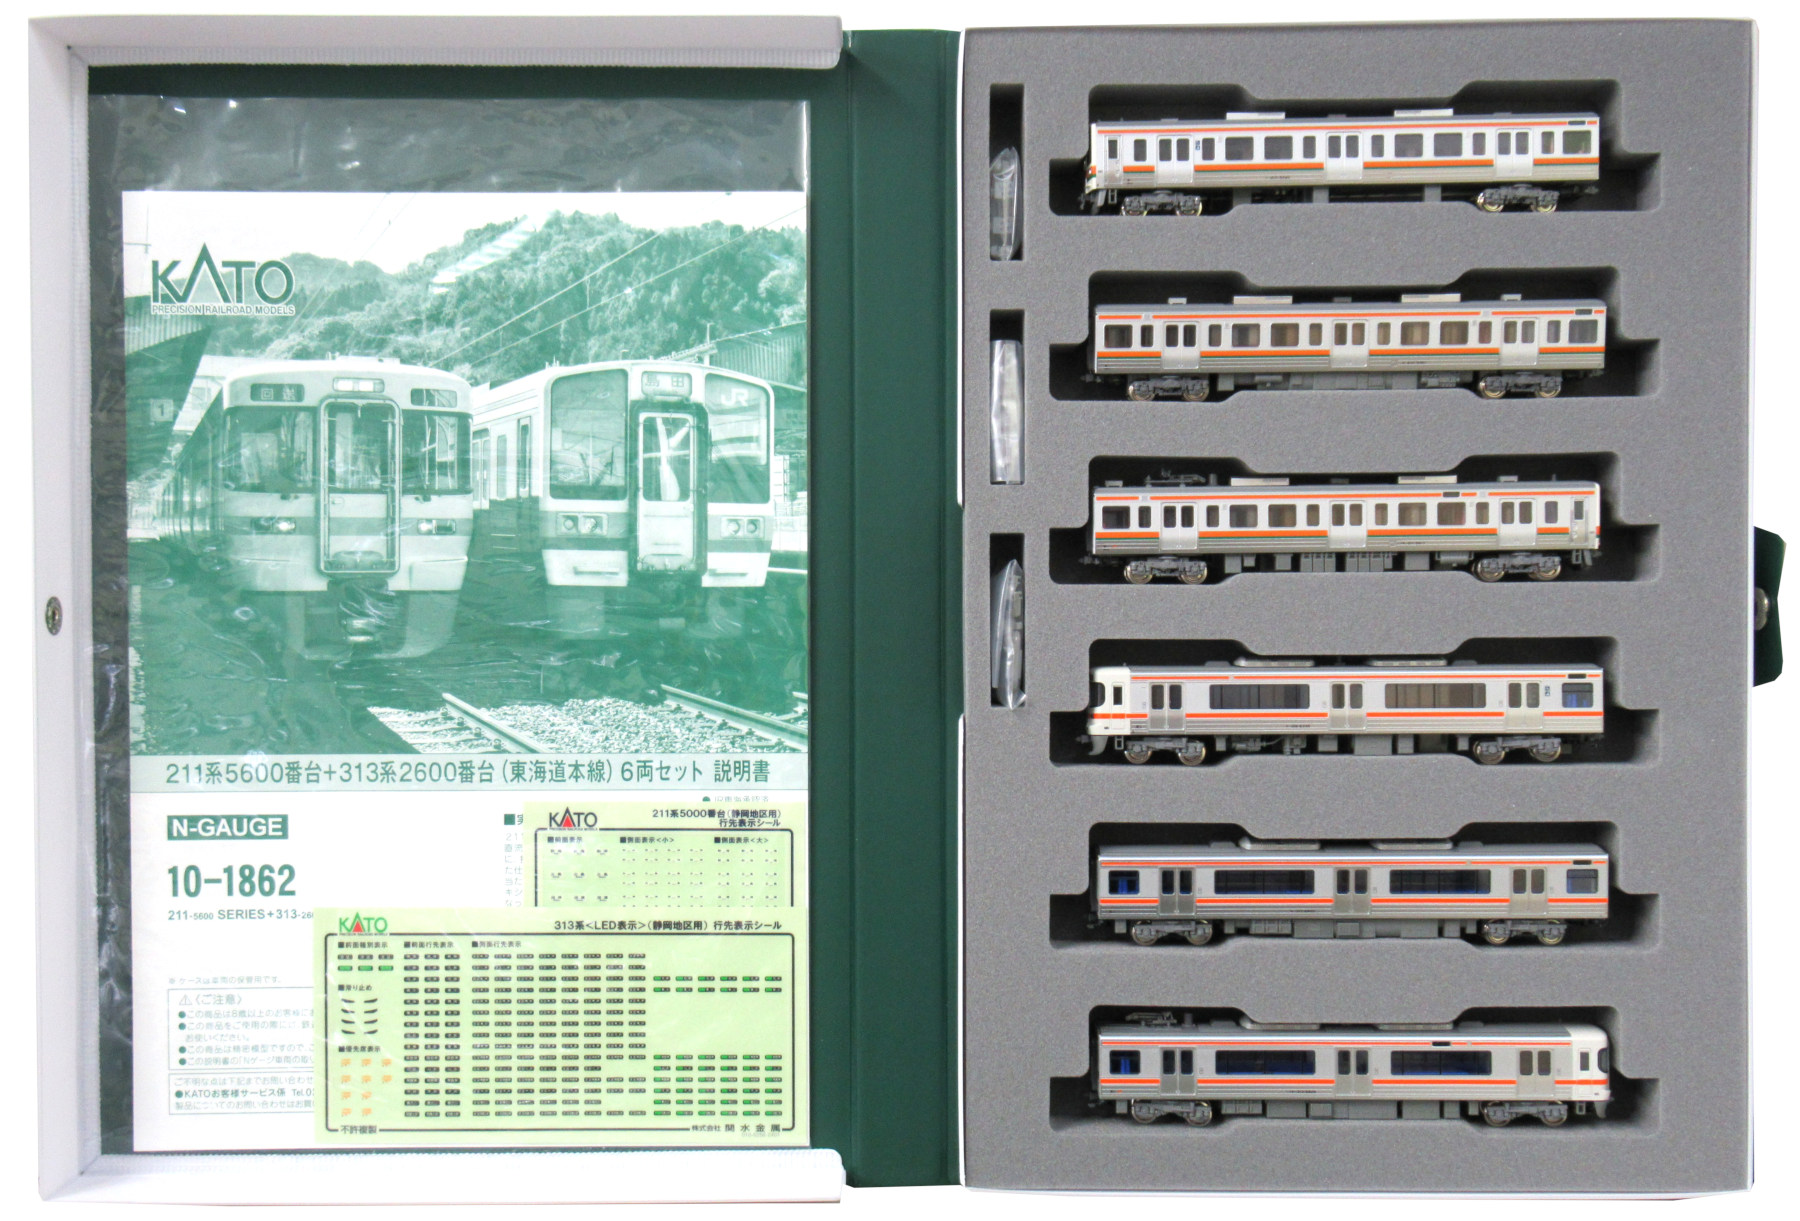 公式]鉄道模型(10-1862211系5600番台+313系2600番台(東海道本線) 6両 